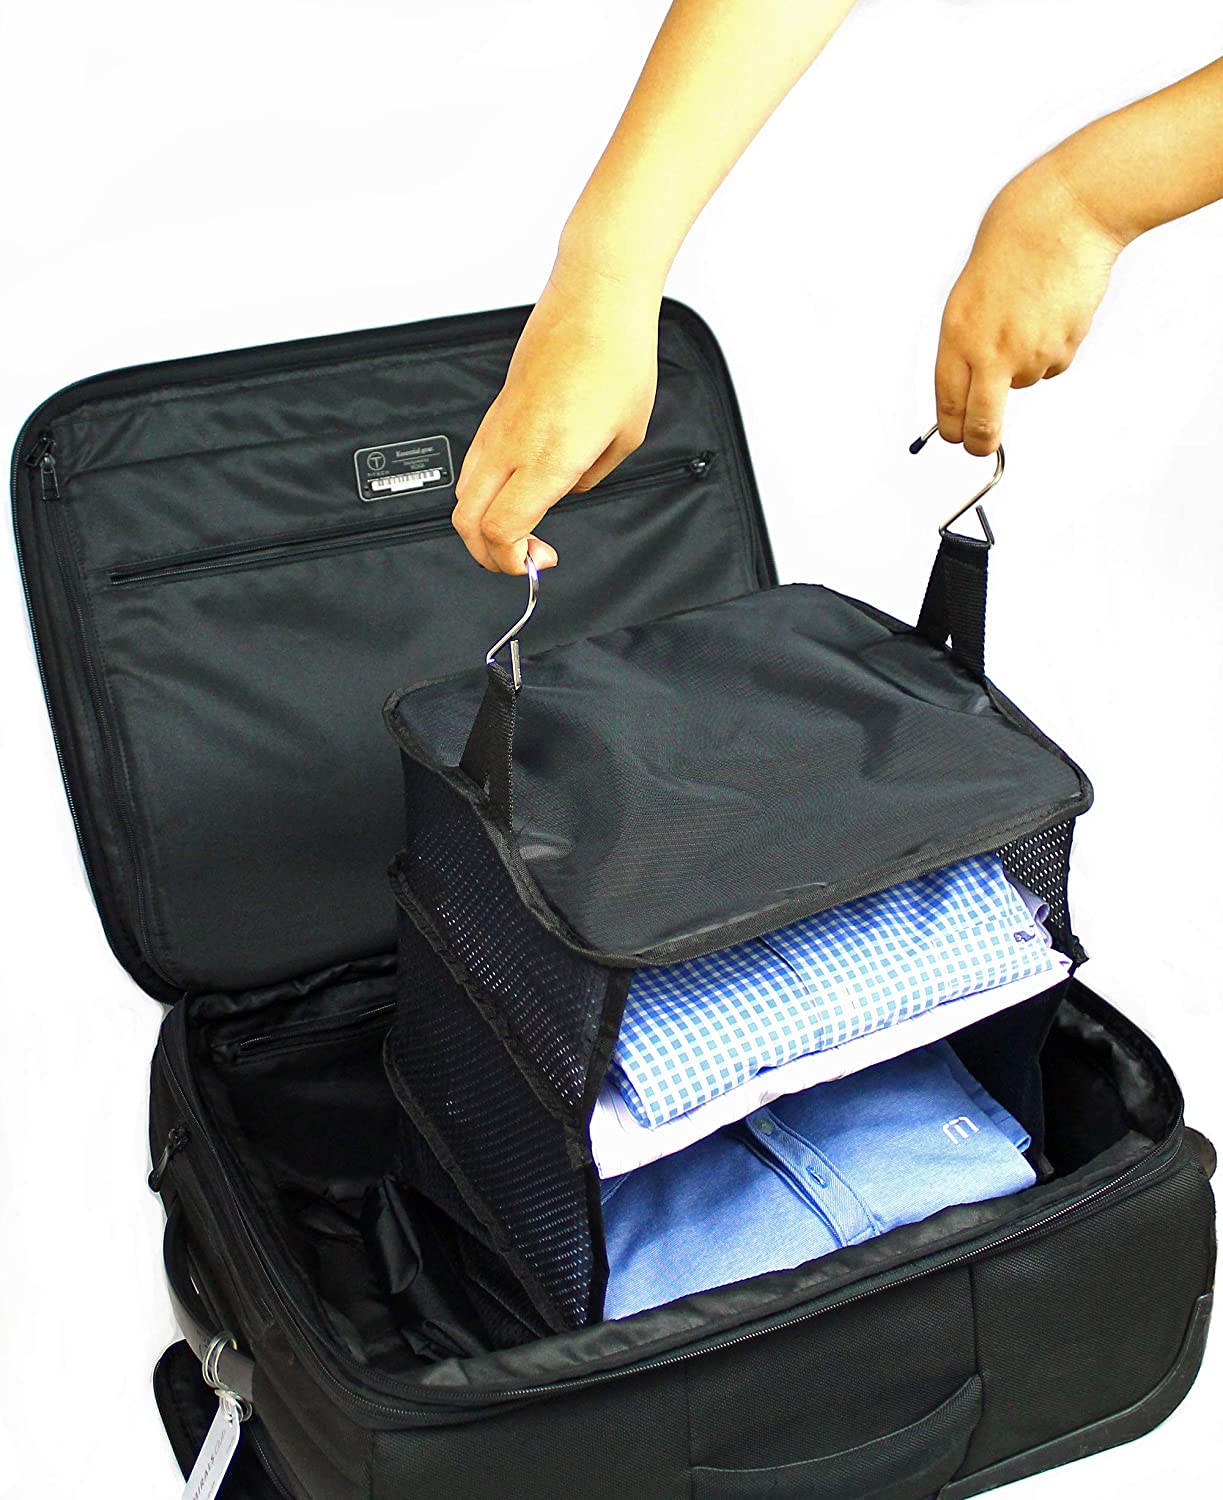 Luggage System Suitcase Organizer